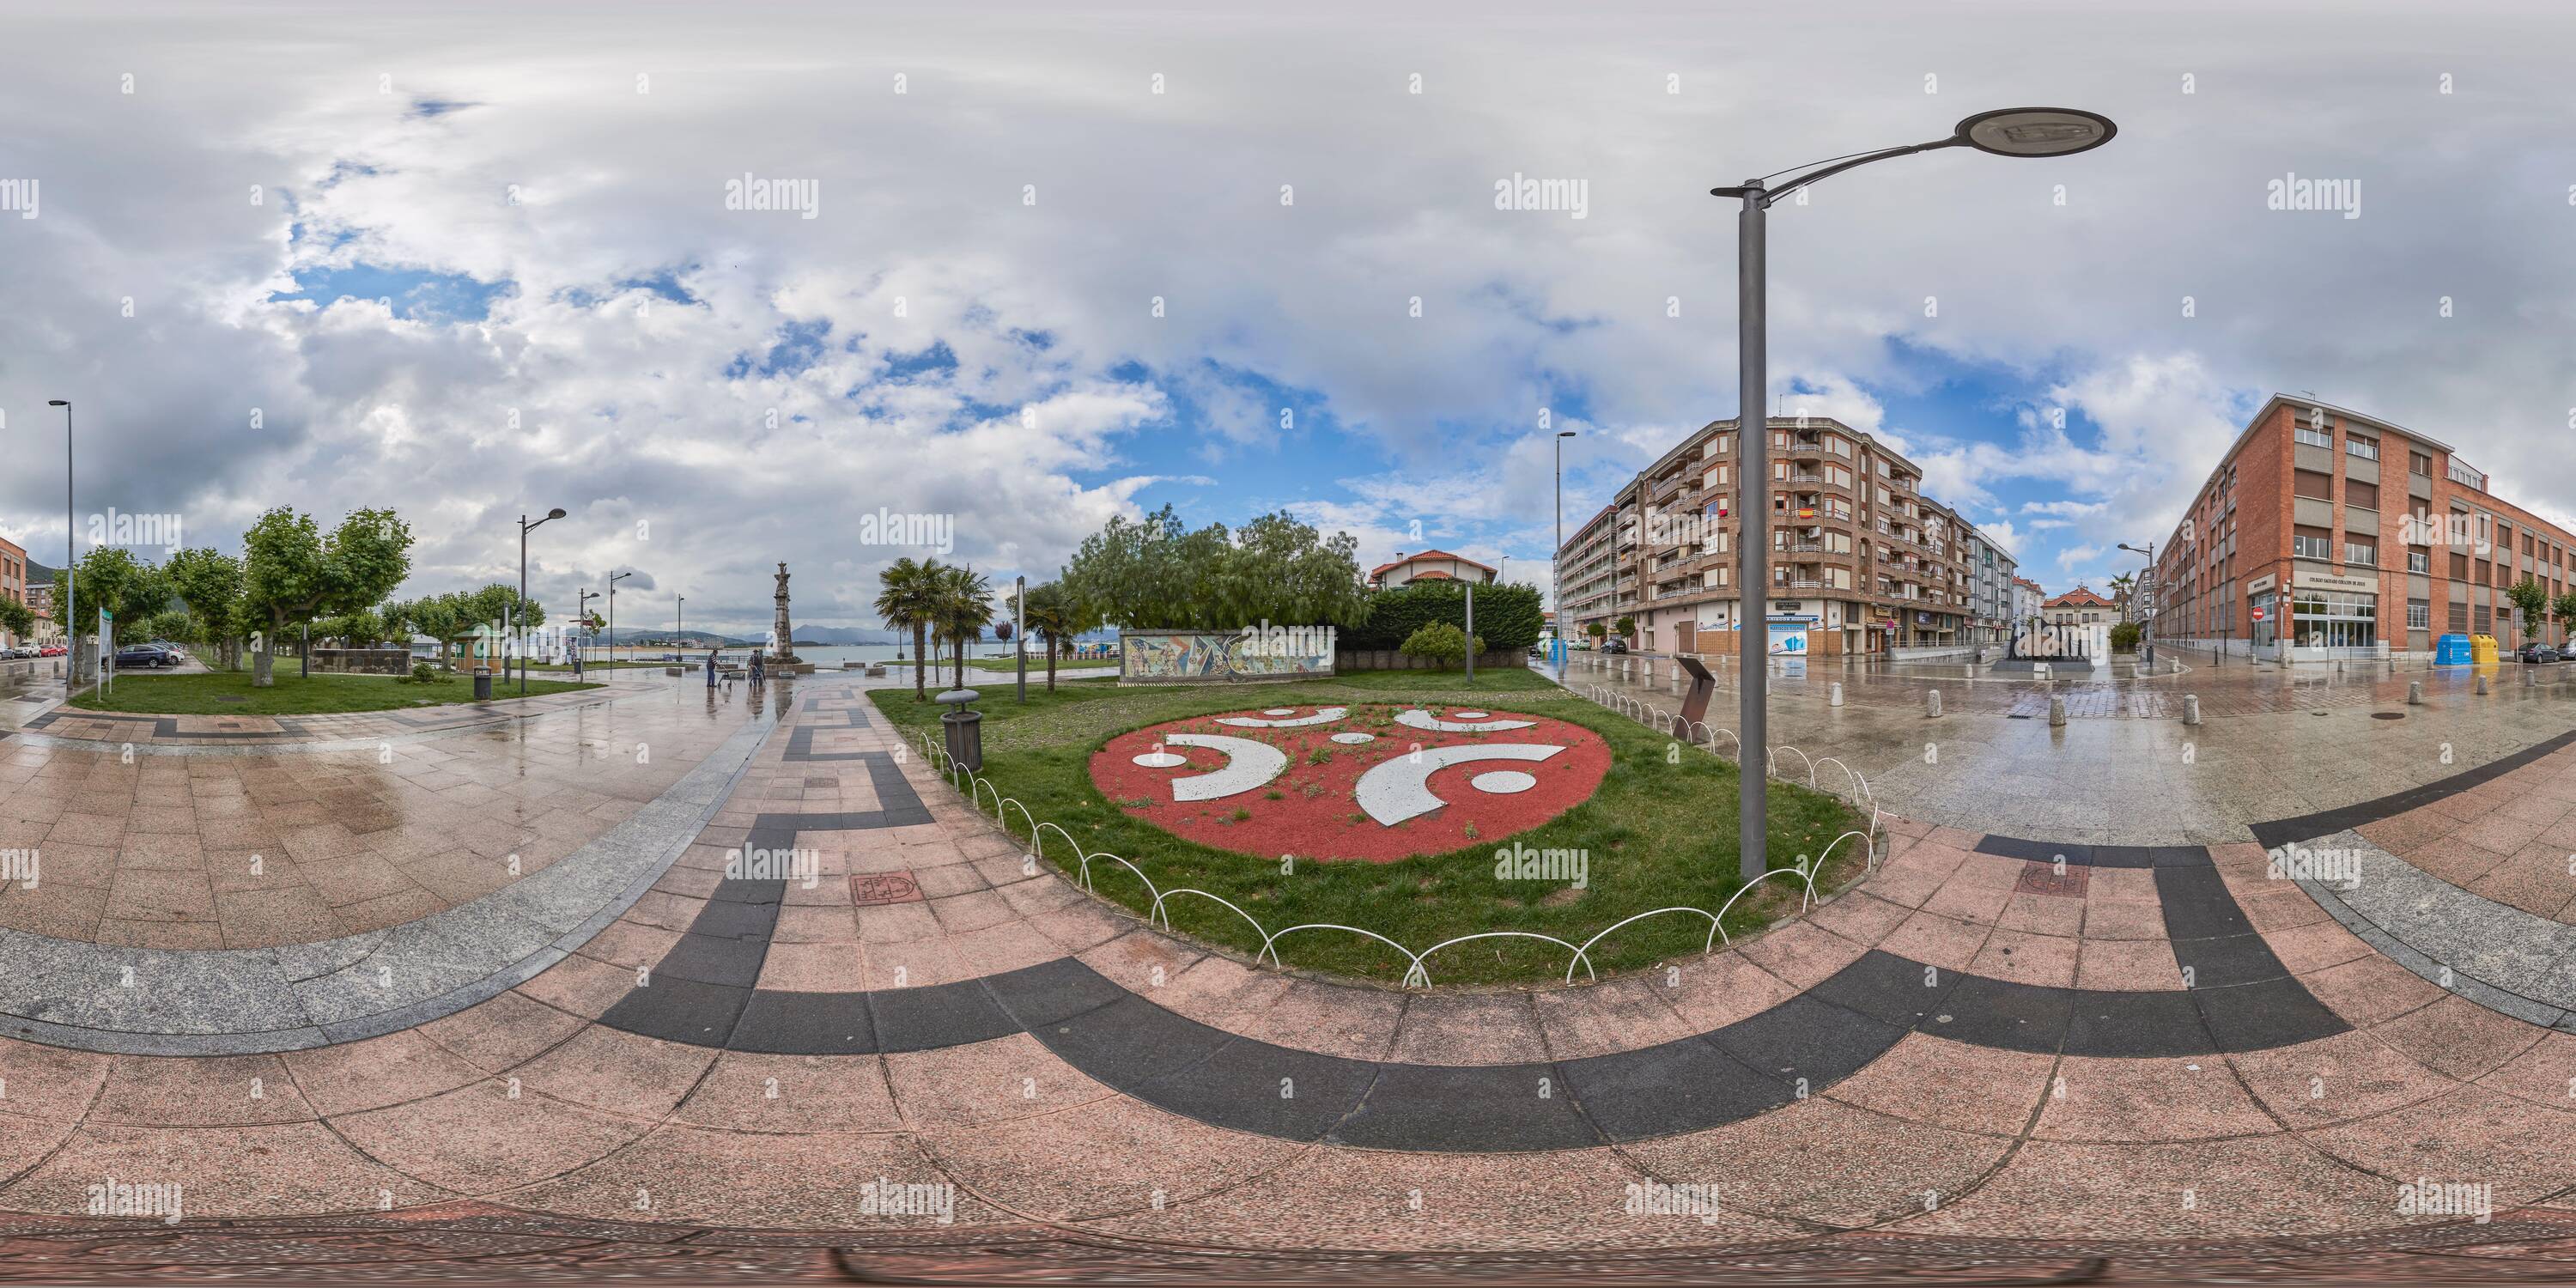 Vue panoramique à 360° de 360 degrés panoramique: Monument au Carnaval de la Plaza de la Corcordia et Juan de la Cosa sur la promenade de Santona, Cantabria, Espagne, Europe.